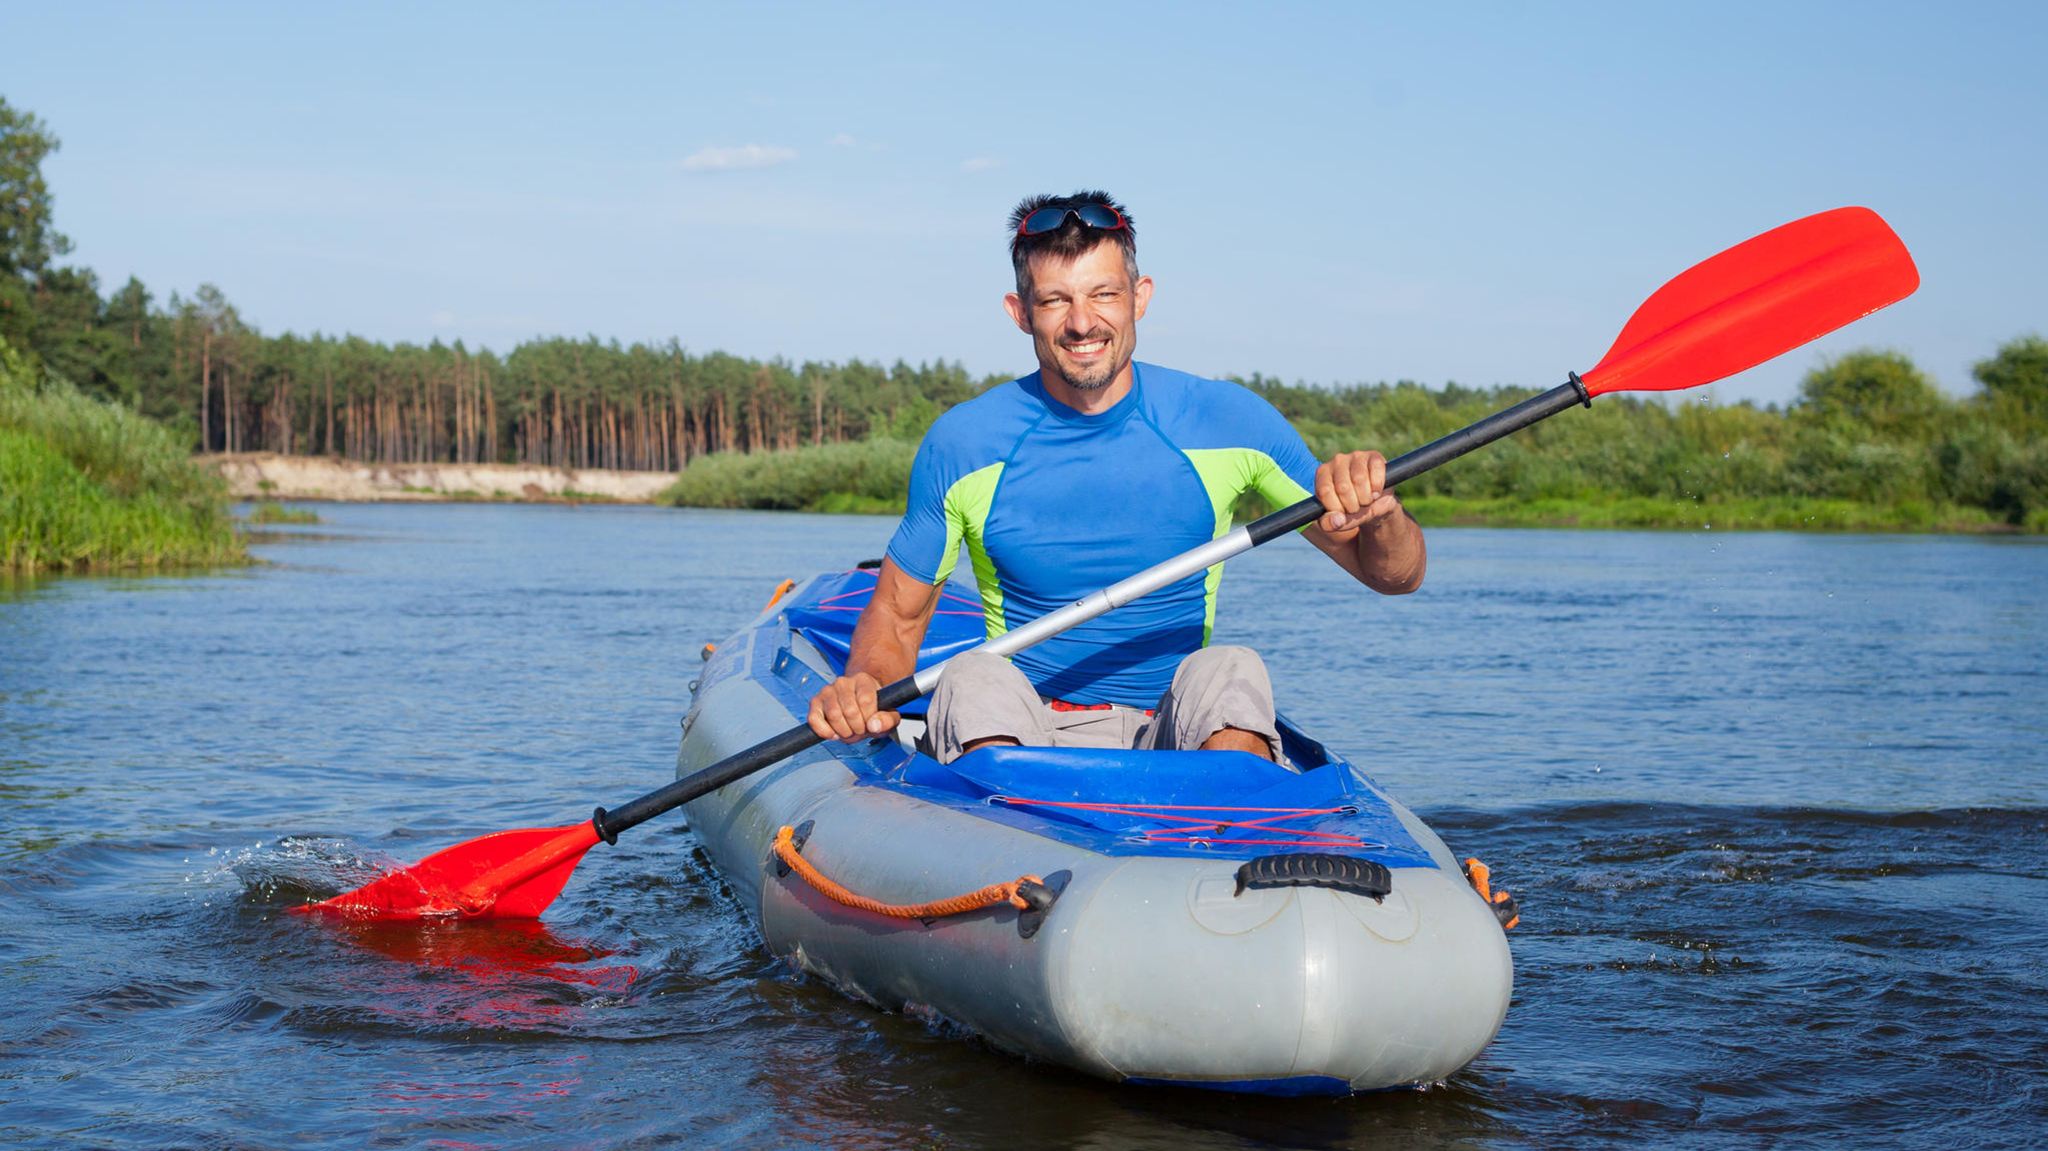 Kajak fahren: Praktische Tipps für aufblasbare Kanus